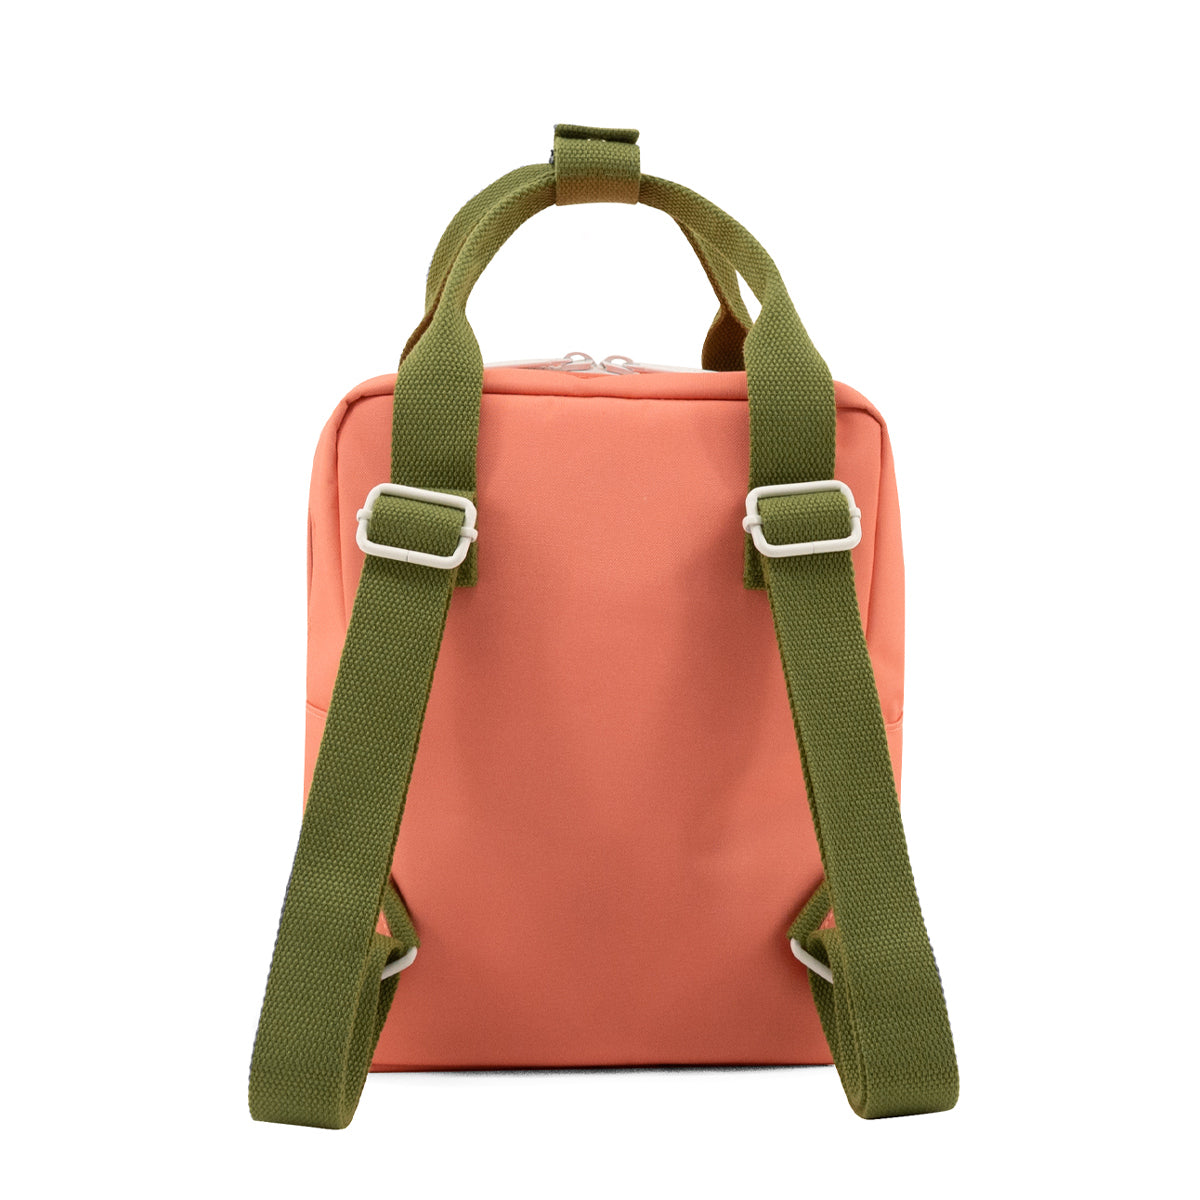 Sticky Lemon Backpack Small | Farmhouse | Envelope | Flower Pink